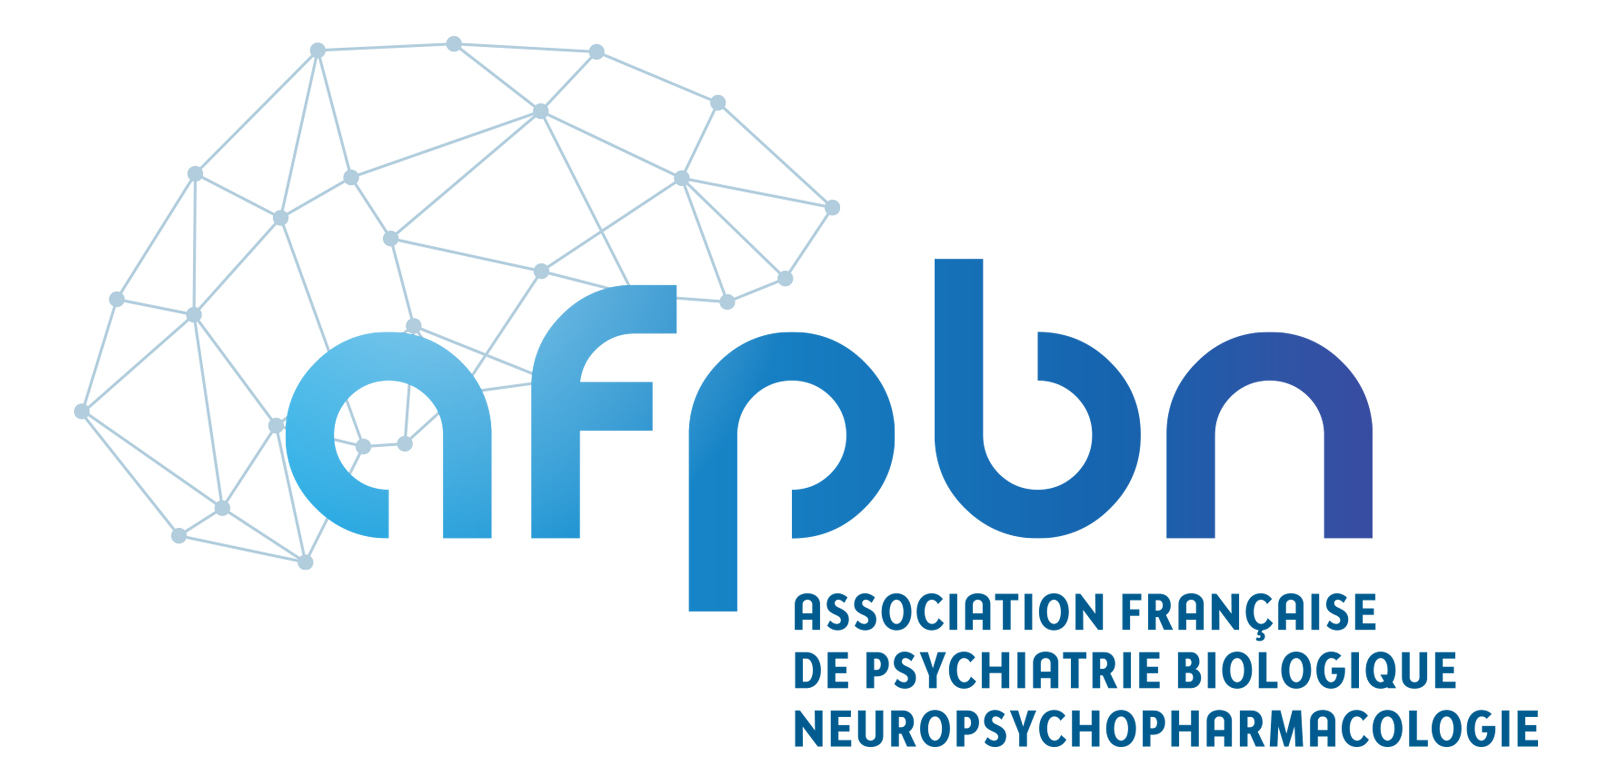 Association Française de Psychiatrie Biologique et Neuropsychopharmacologie